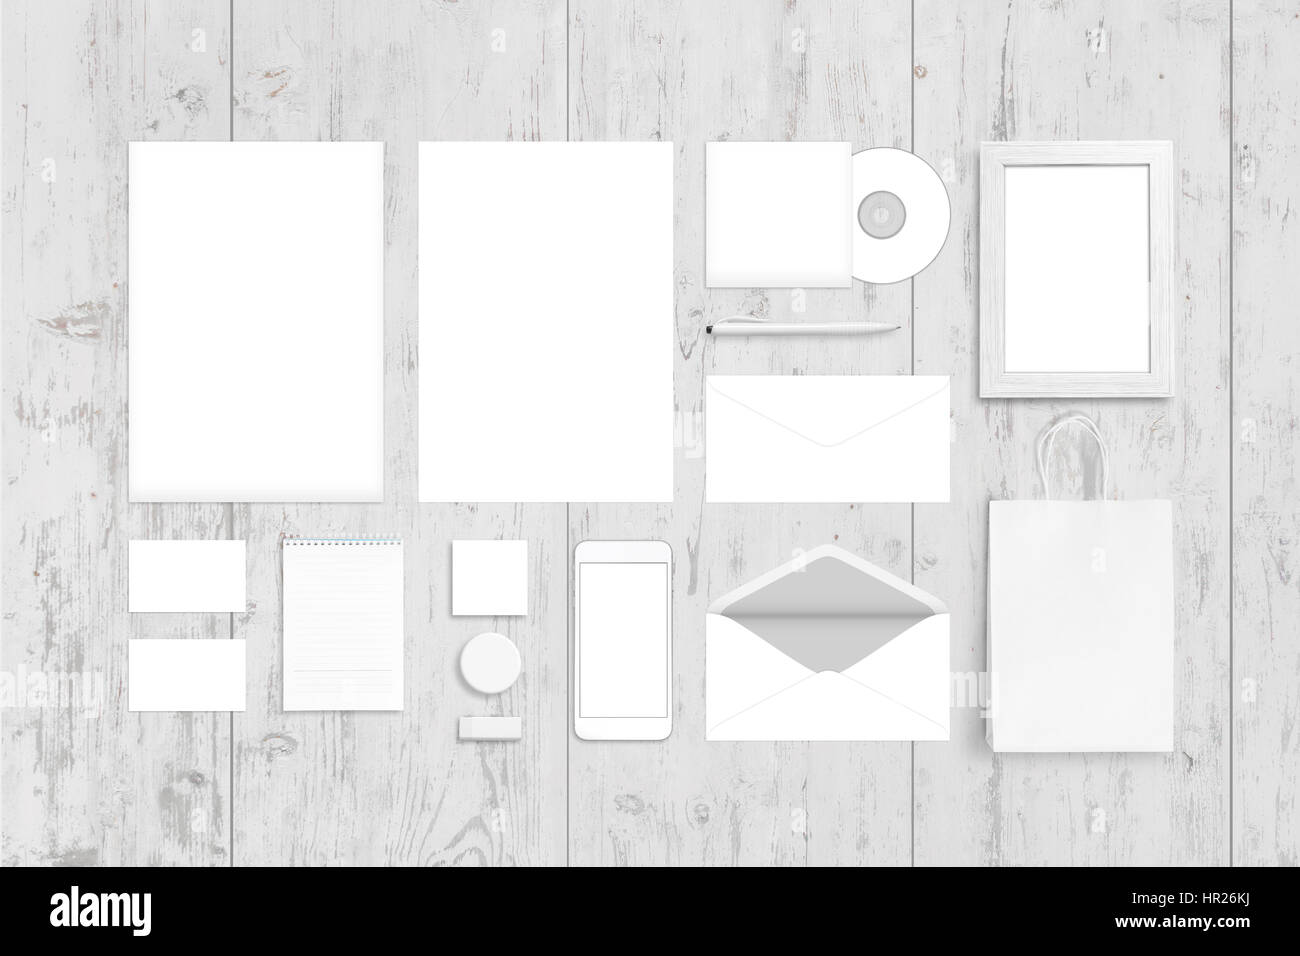 Visuellen Unternehmensidentität Draufsicht Vorlage. Logo, Design-Präsentation. Weißer Schreibtisch aus Holz. Stockfoto